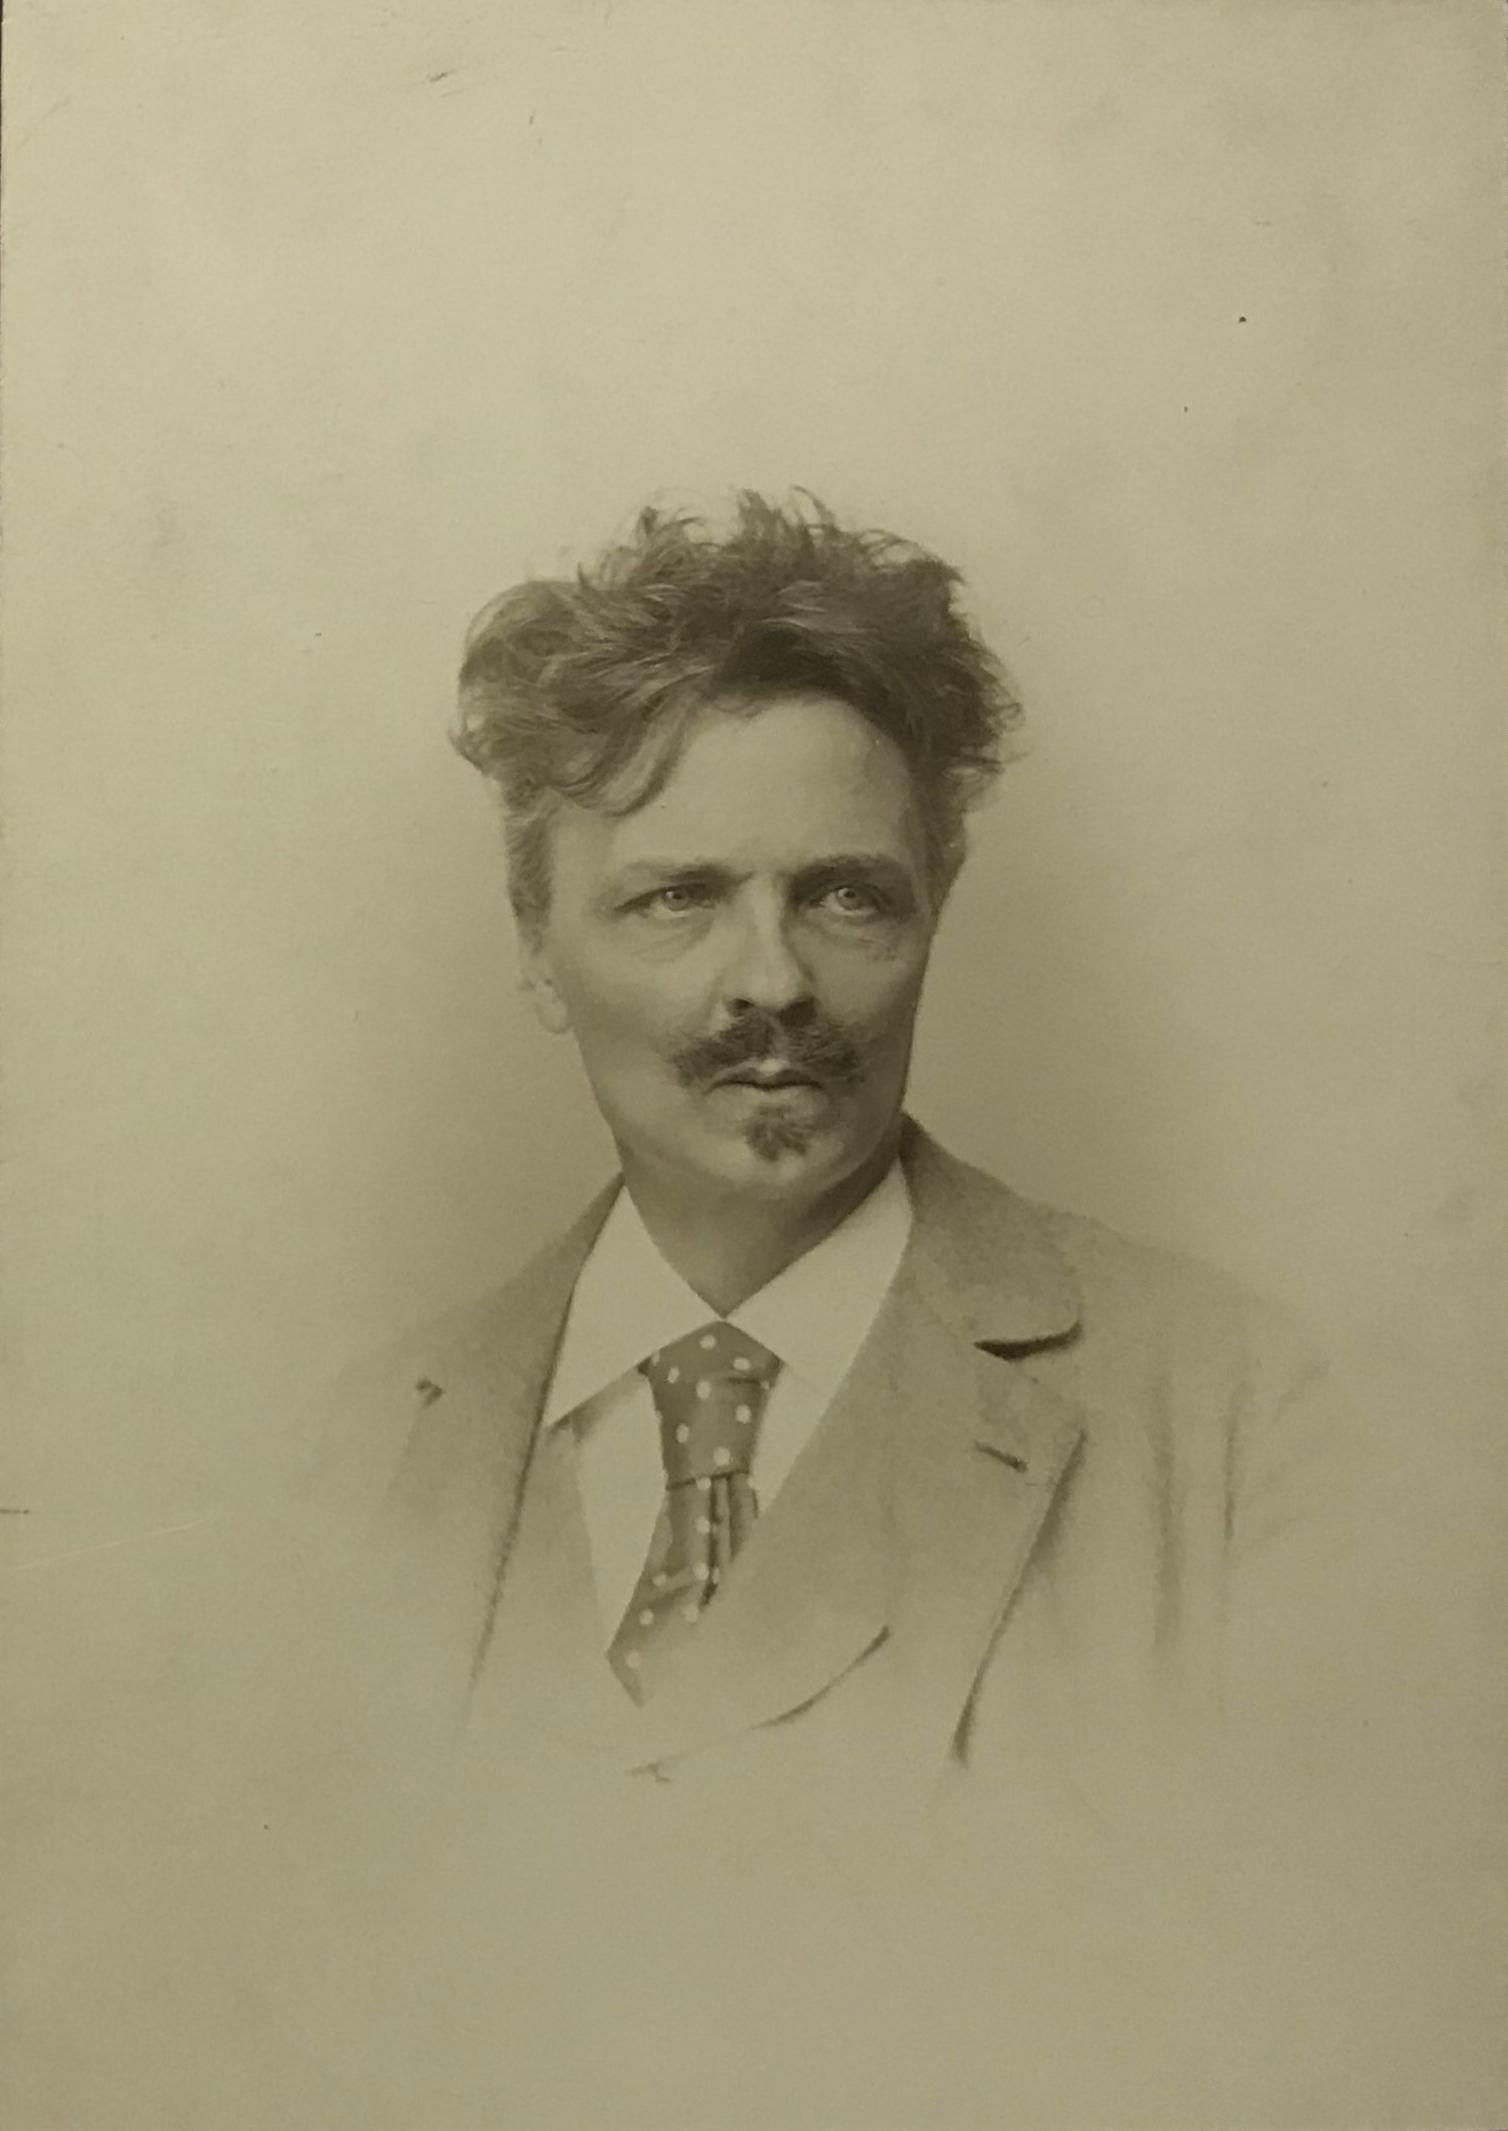 Svartvitt fotografi i halvfigur av en man med mustasch och yvigt hår.